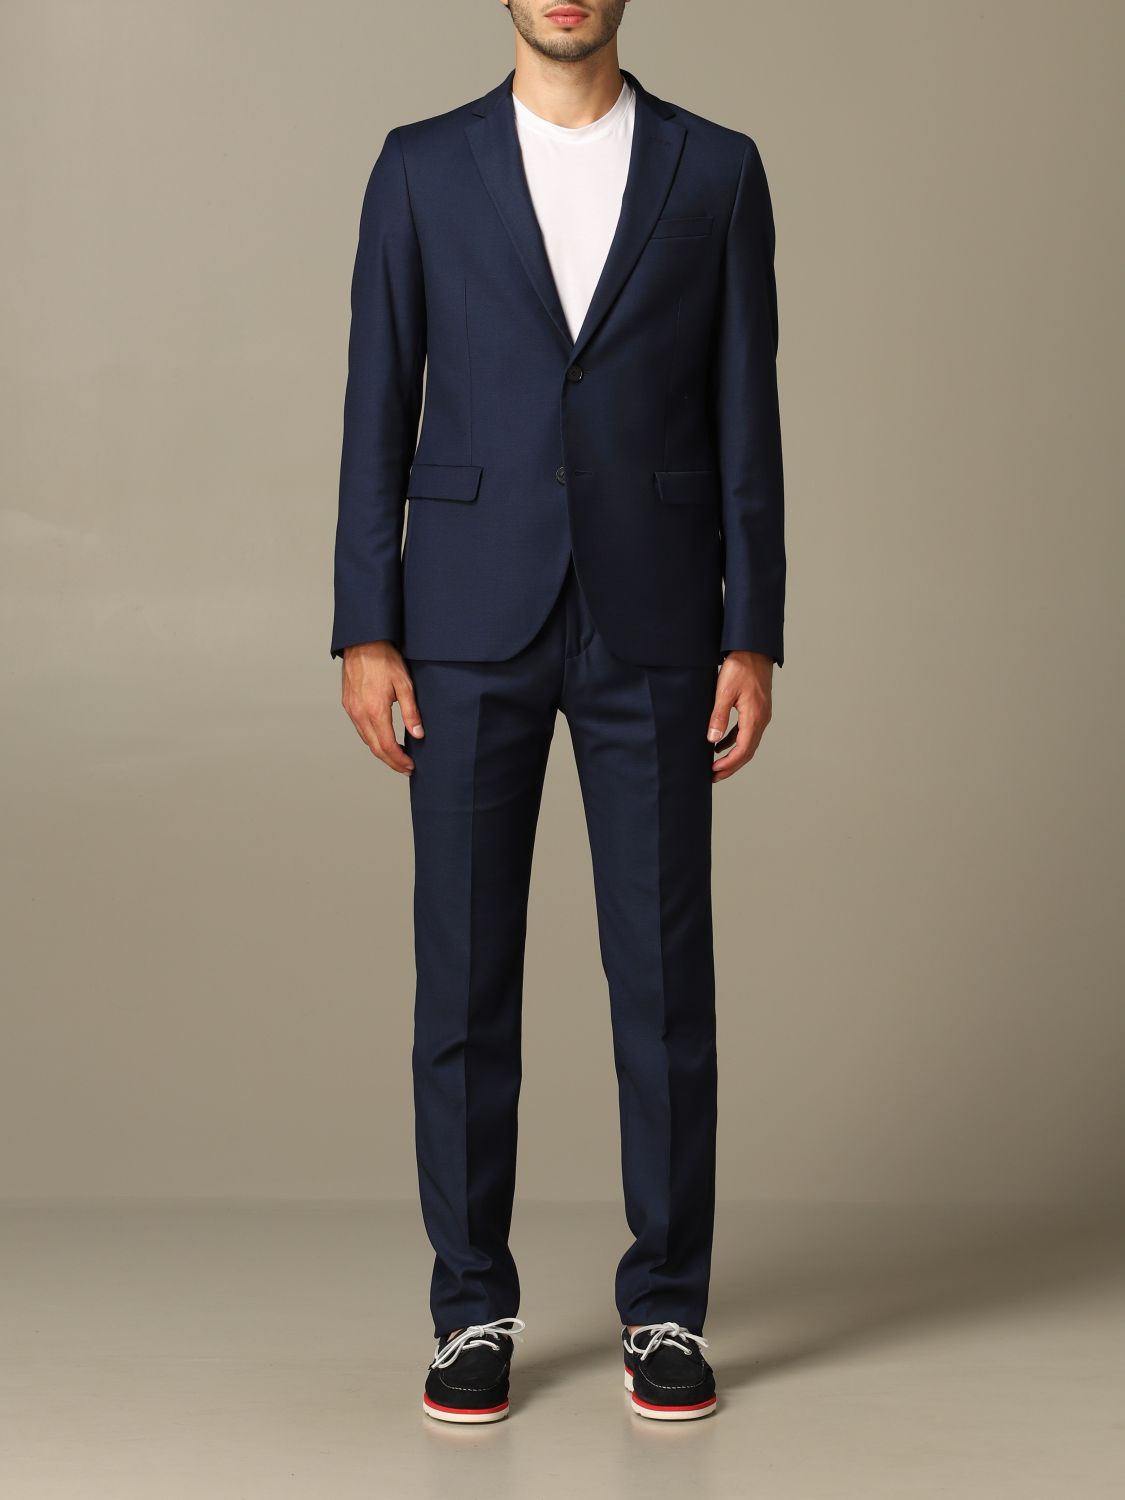 Manuel Ritz Outlet: single-breasted suit - Blue 1 | Manuel Ritz suit ...